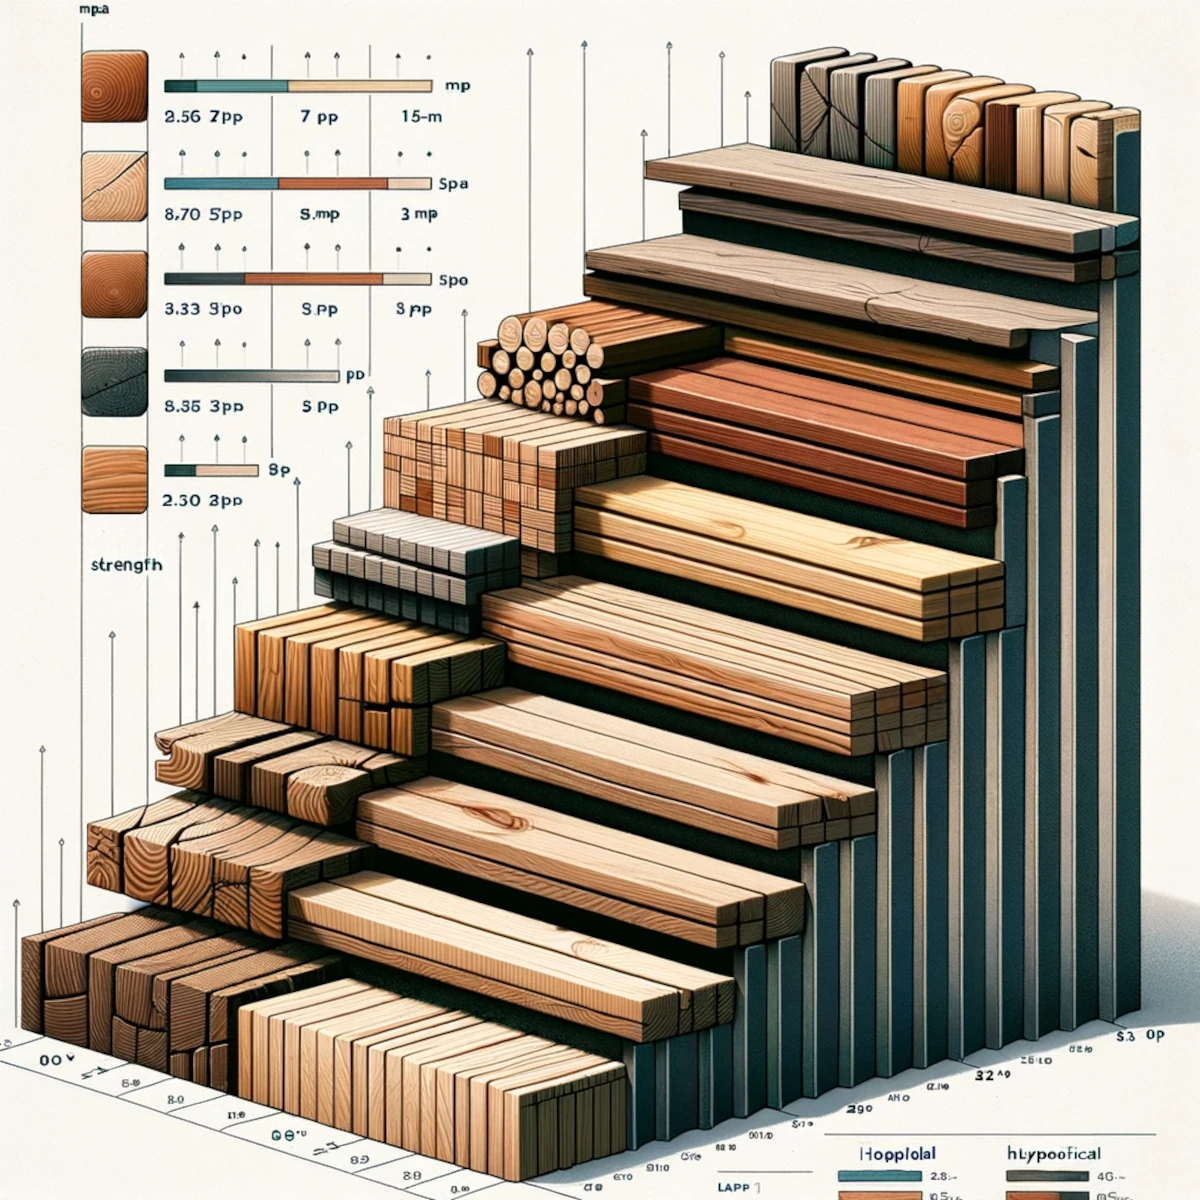 Zależność między rodzajem drewna używanego na stopnice schodowe a ich wytrzymałością